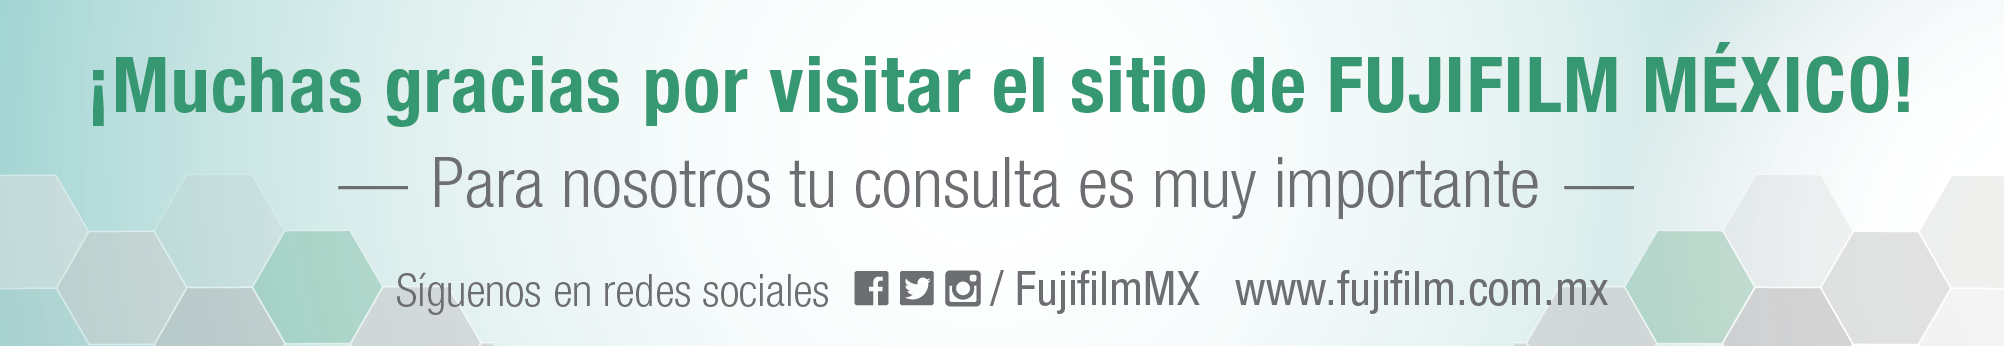 Muchas gracias por visitar el sitio de Fujifilm México. Para nosotros tu sugerencia es muy importante.